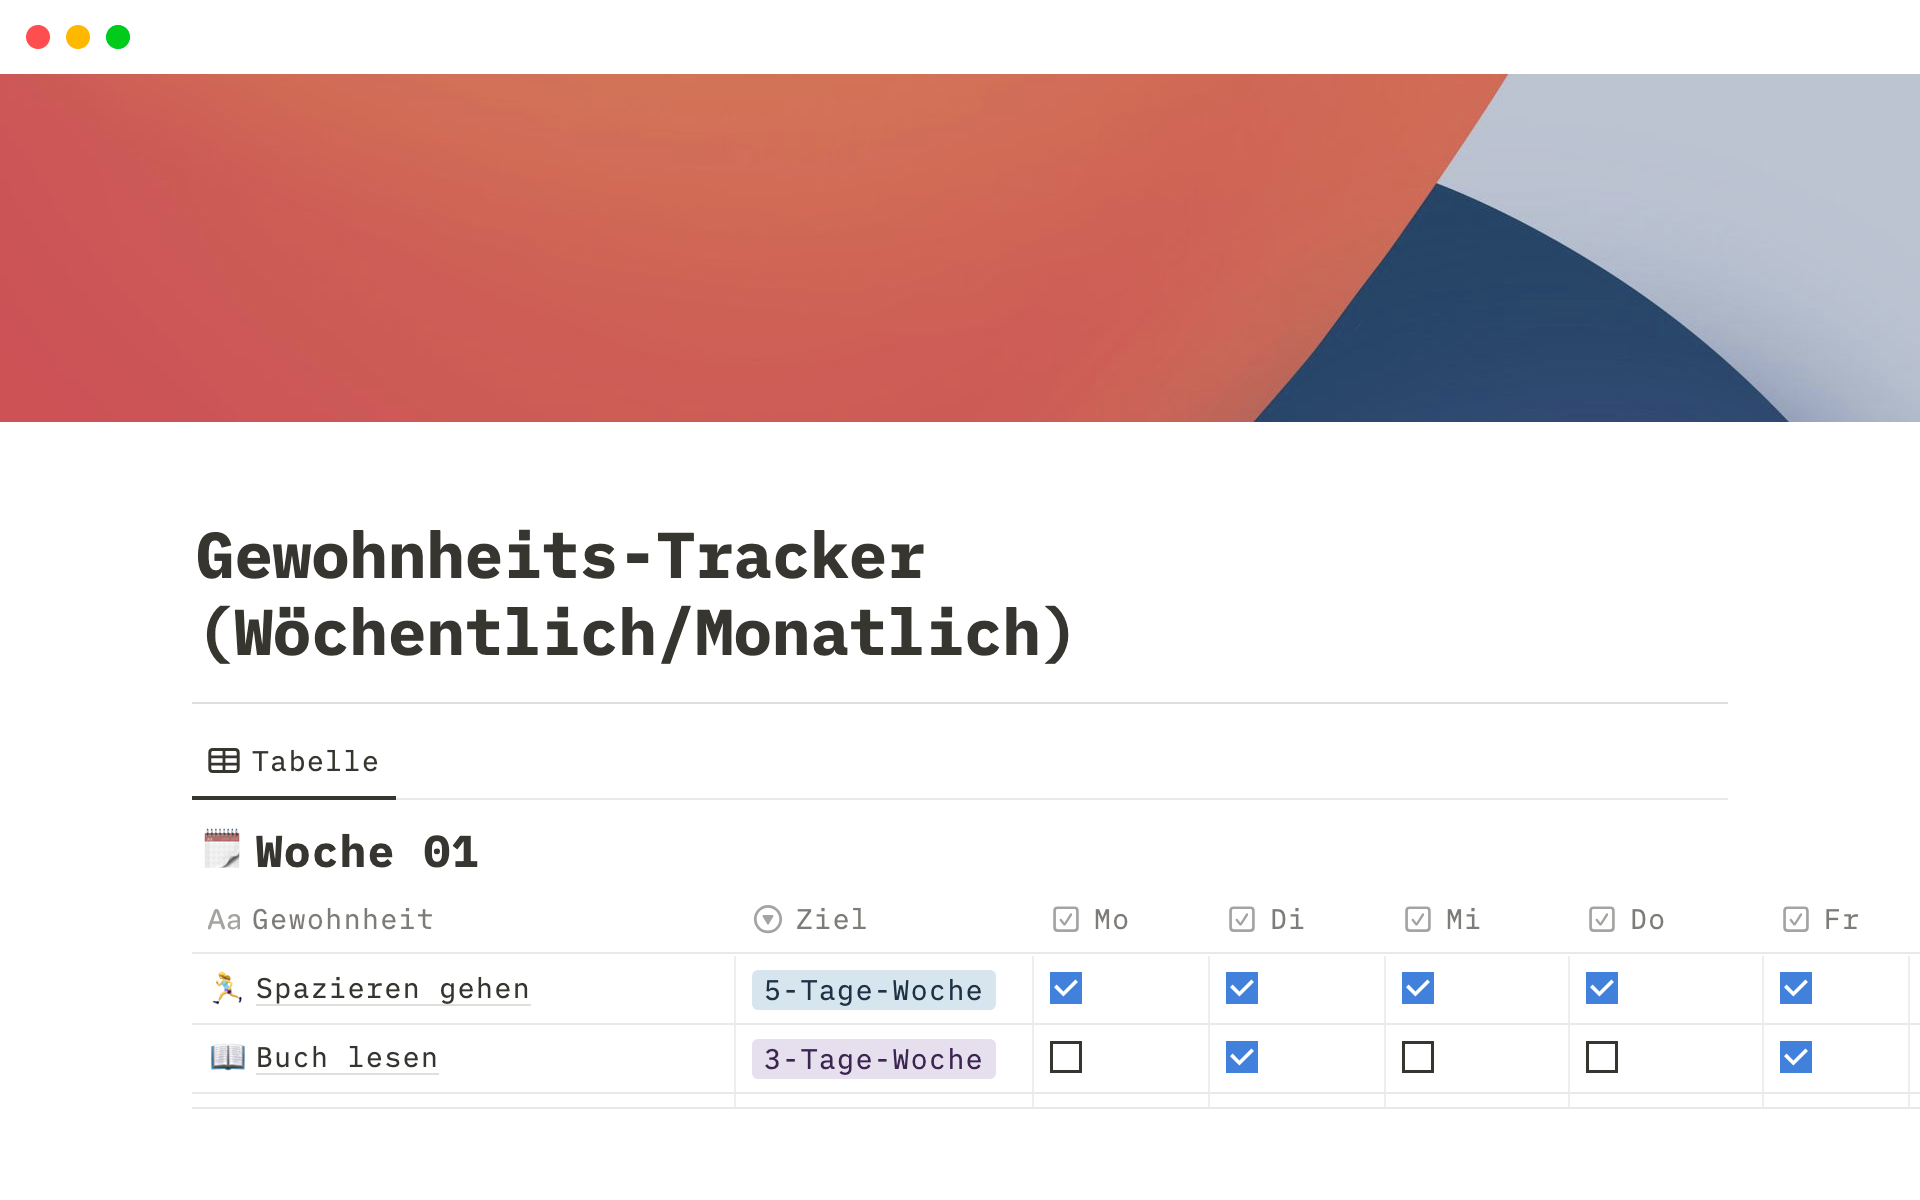 Vista previa de plantilla para Gewohnheits-Tracker (Wöchentlich/Monatlich)